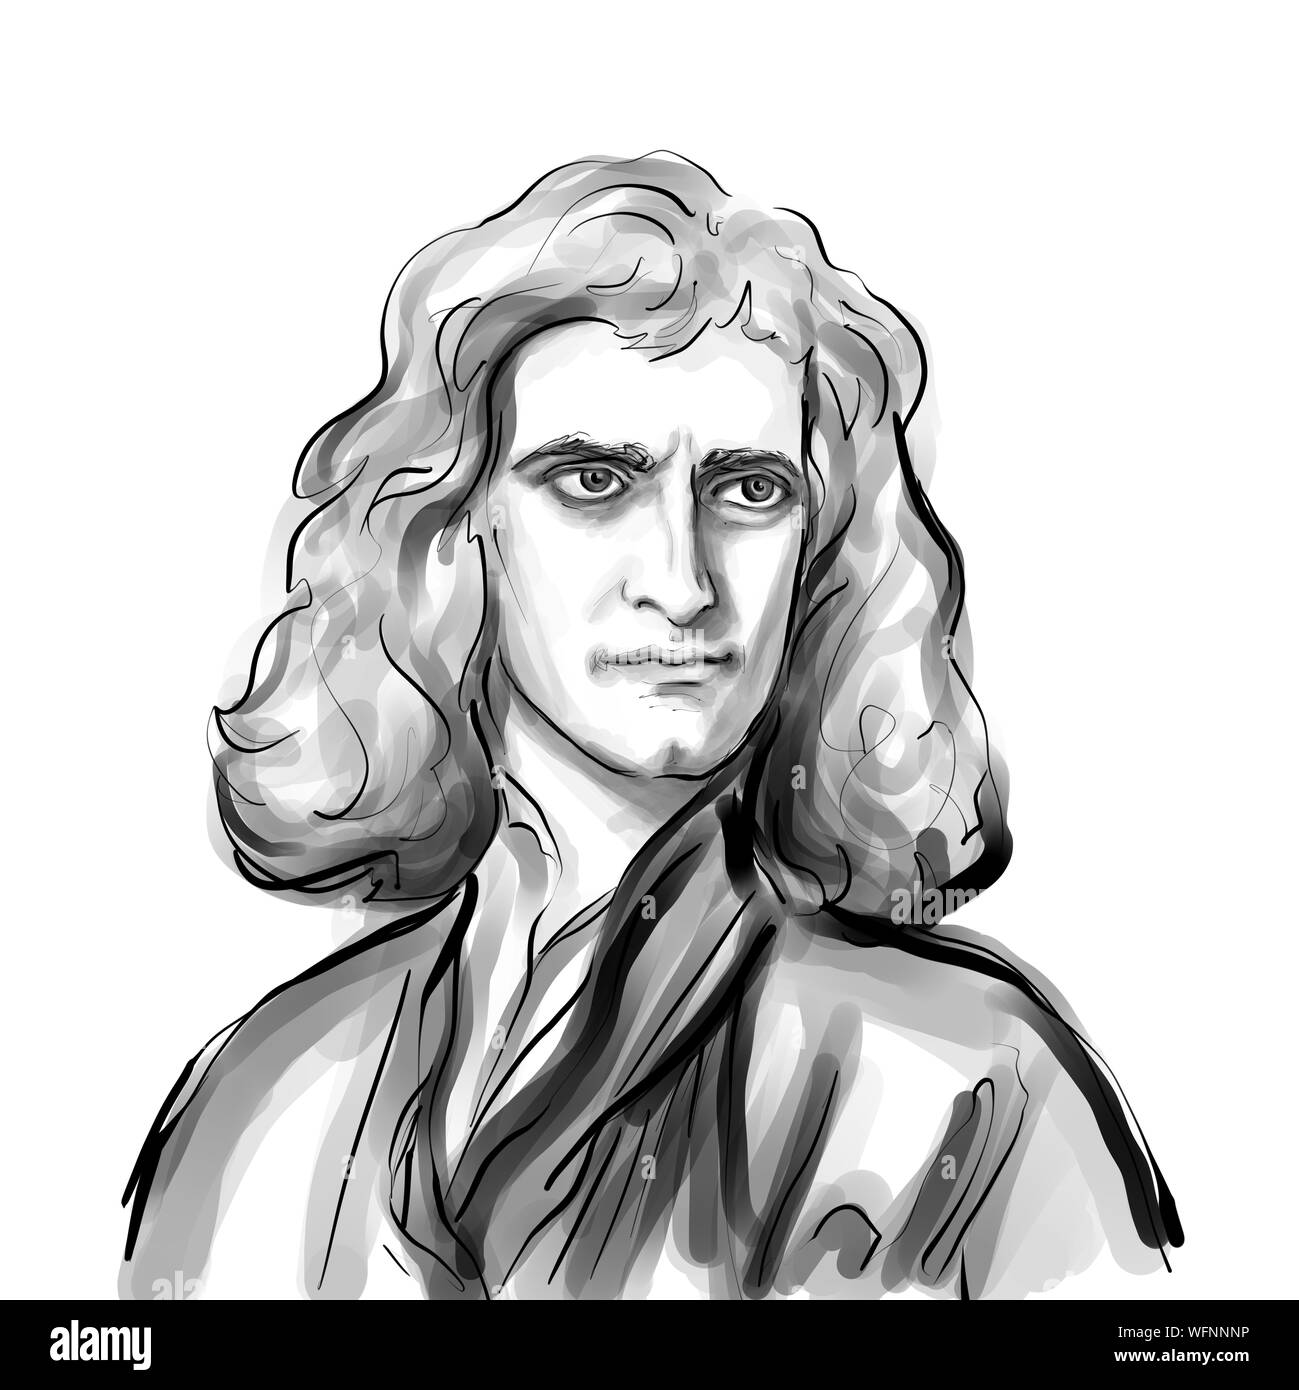 Karikatur von Isaac Newton theoretische Physiker Wissenschaftler Portrait Zeichnung Abbildung Stockfoto